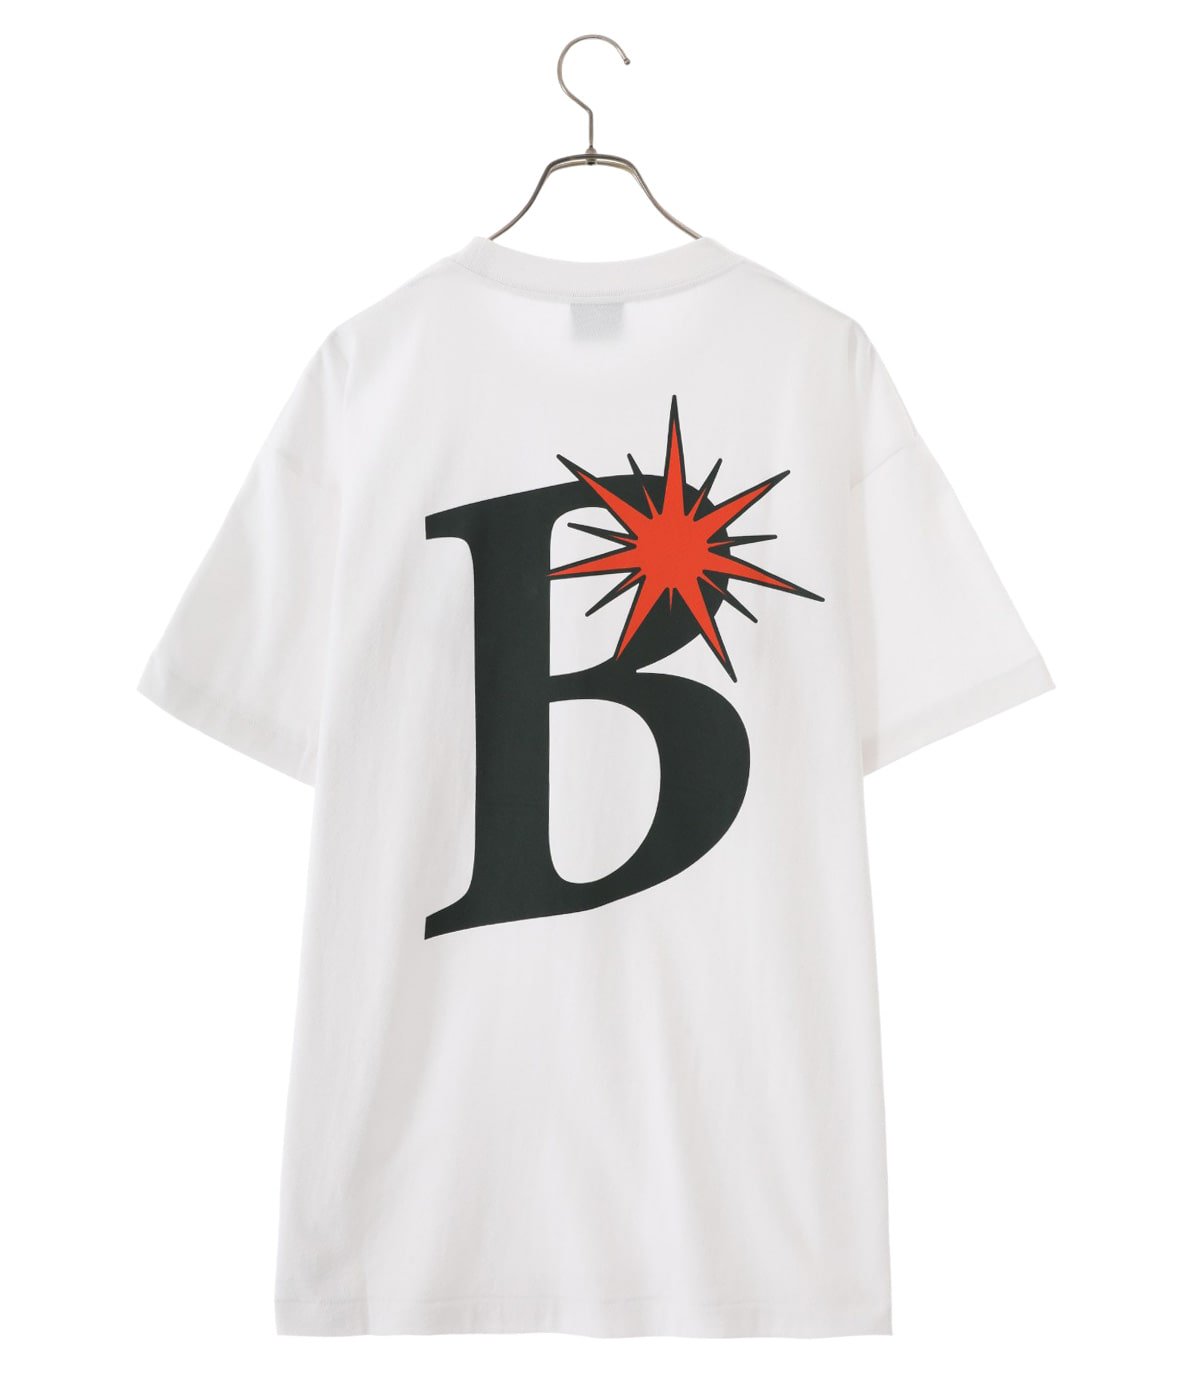 お値打ち品 BoTT Logo Tee LOGO Tシャツ ネイビー XL | erational.com